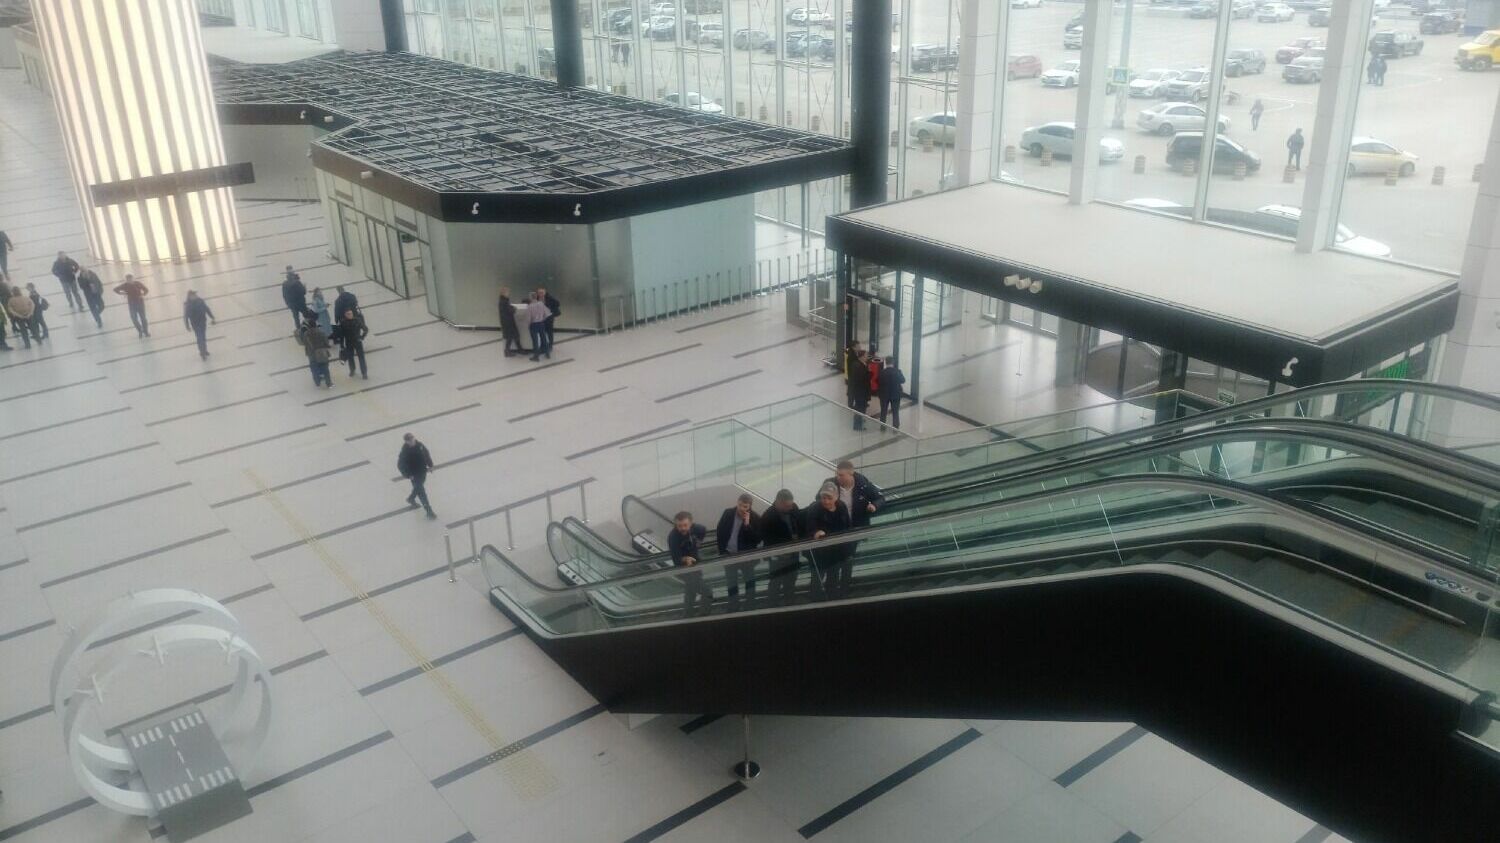 Терминал получил современное техническое оснащение: здесь установлены 54 стойки регистрации, 25 лифтов, 18 эскалаторов